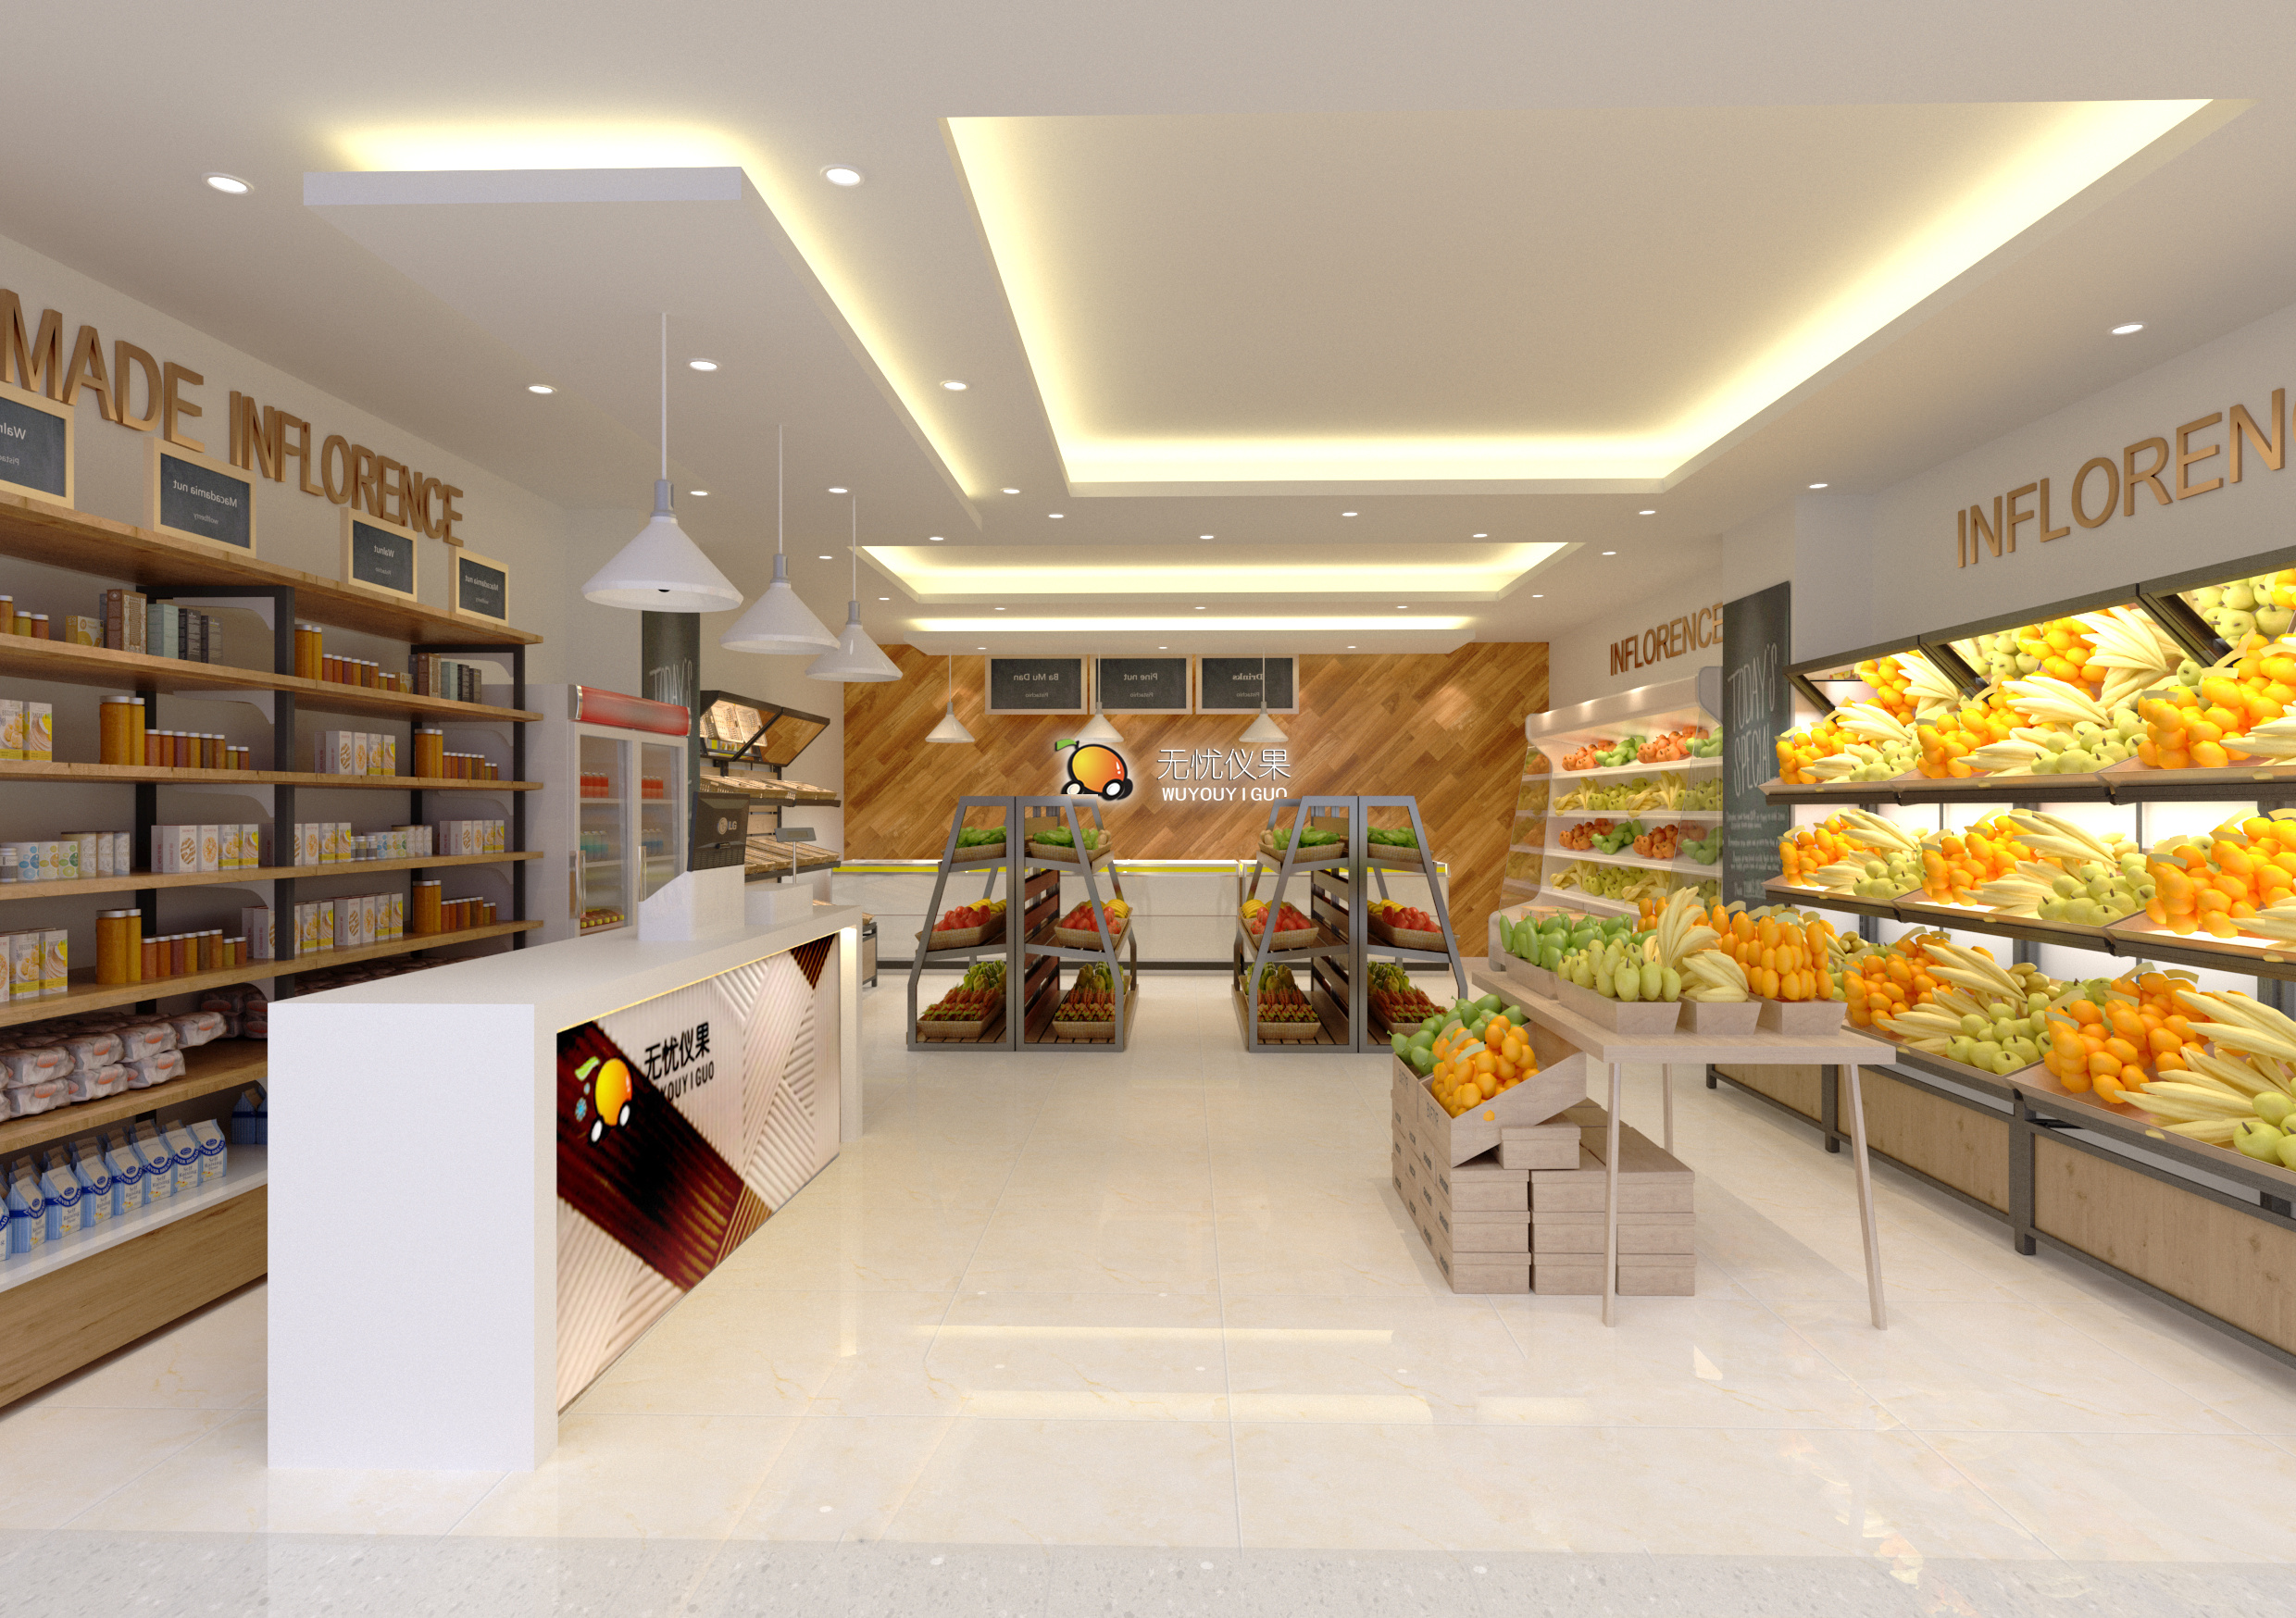 金坛东城精品超市 - 效果图交流区-建E室内设计网